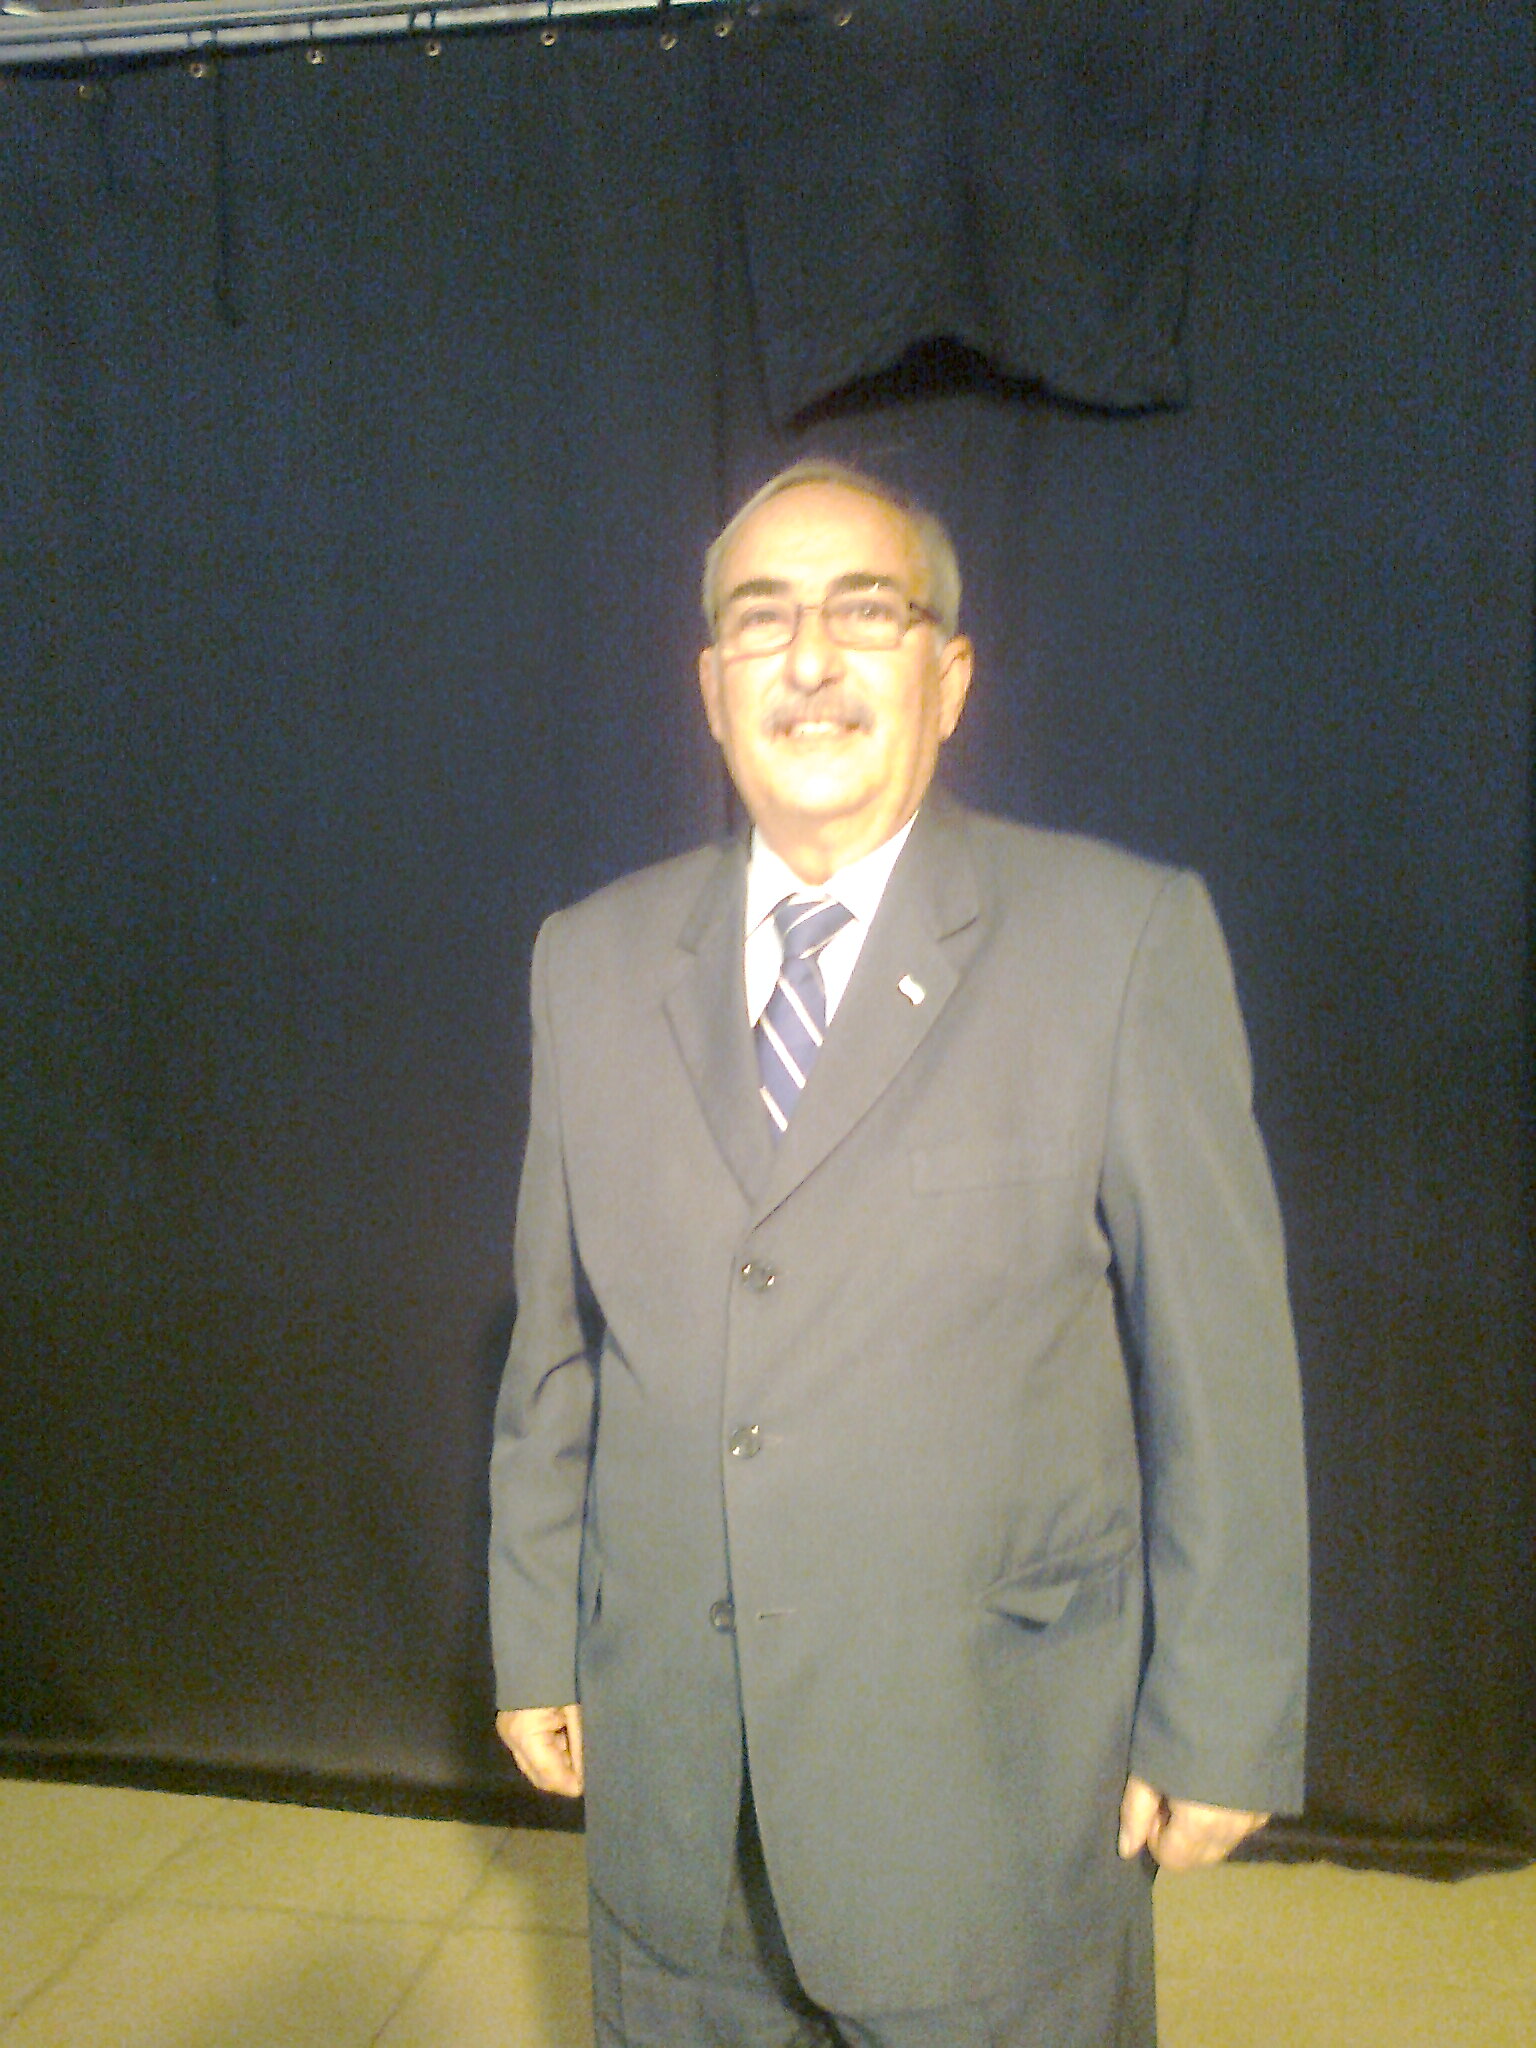 Francisco Murillo elegido Vicepresidente del Consejo de Comunidades Extremeñas